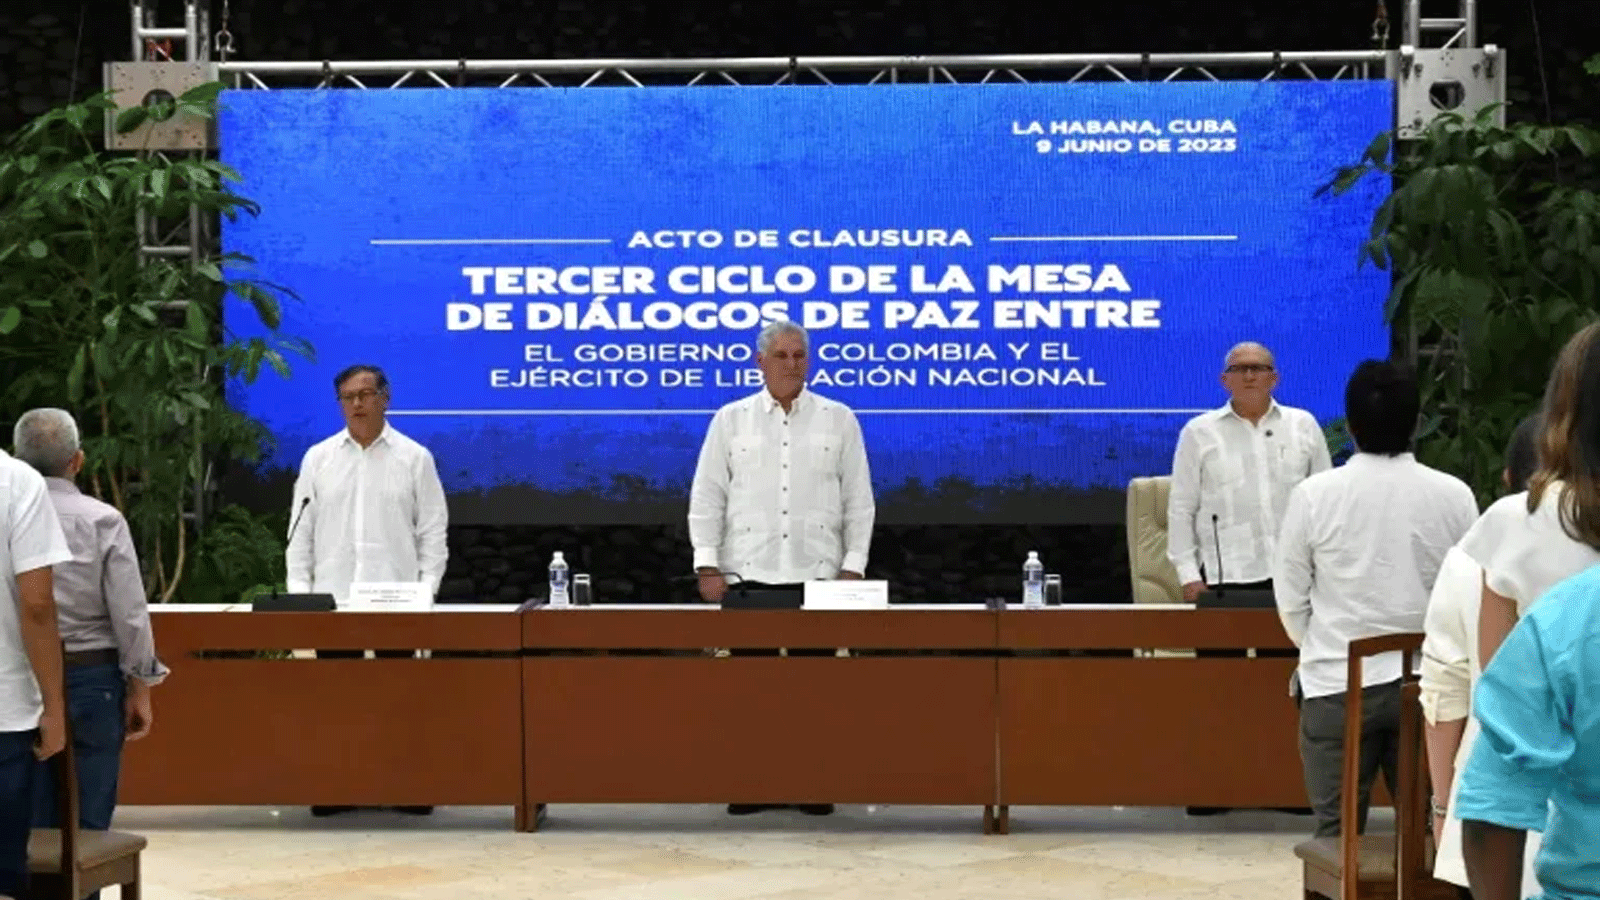 التوقيع على اتفاق لوقف إطلاق النار بحضور الرئيس الكولومبي غوستافو بيترو (يسار) وزعيم جيش التحرير الوطني أنطونيو غارسيا (يمين)، مع الرئيس الكوبي ميغيل دياز كانيل